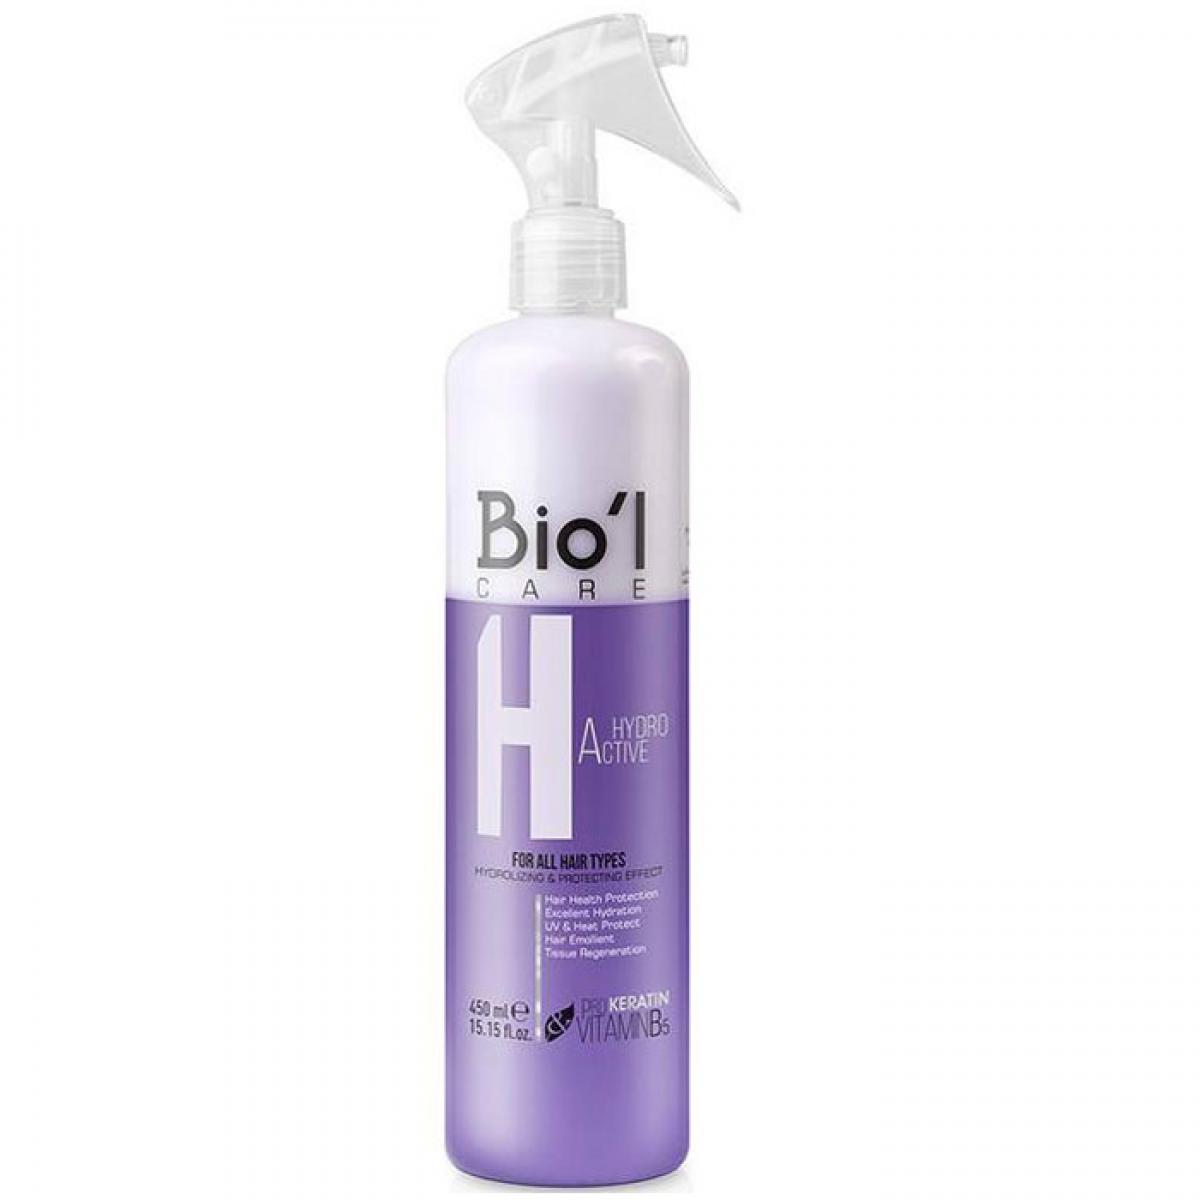 سرم موی دو فاز هایدرو اکتیو - Biol Hydro Active Two Phases Hair Spray